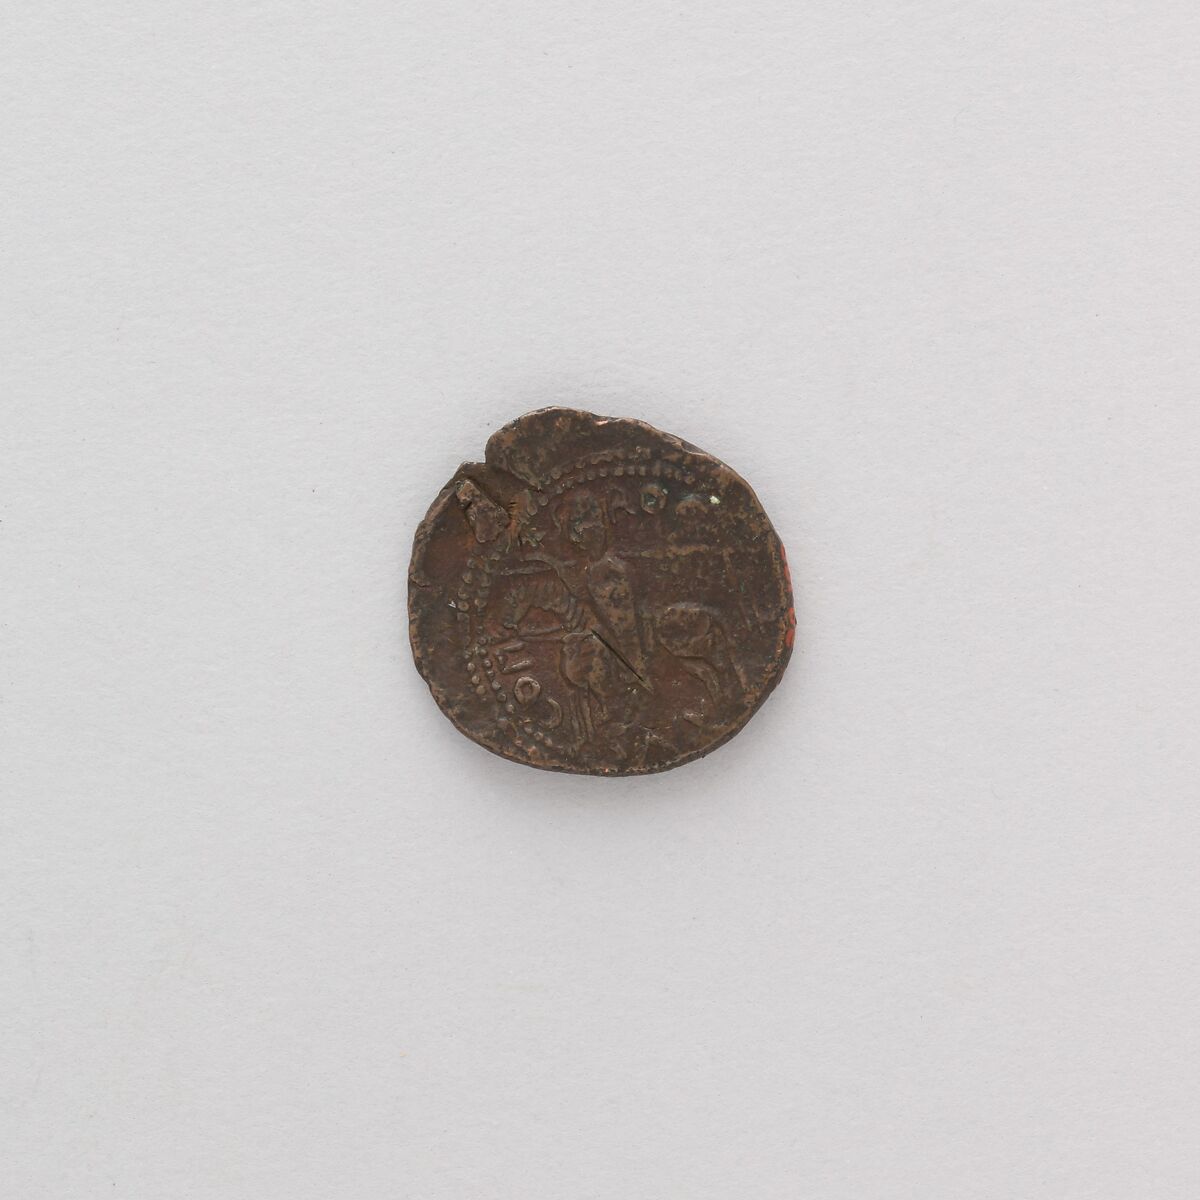 Coin of Roger I, Duke of Sicily, Bronze, Italian, Sicily 